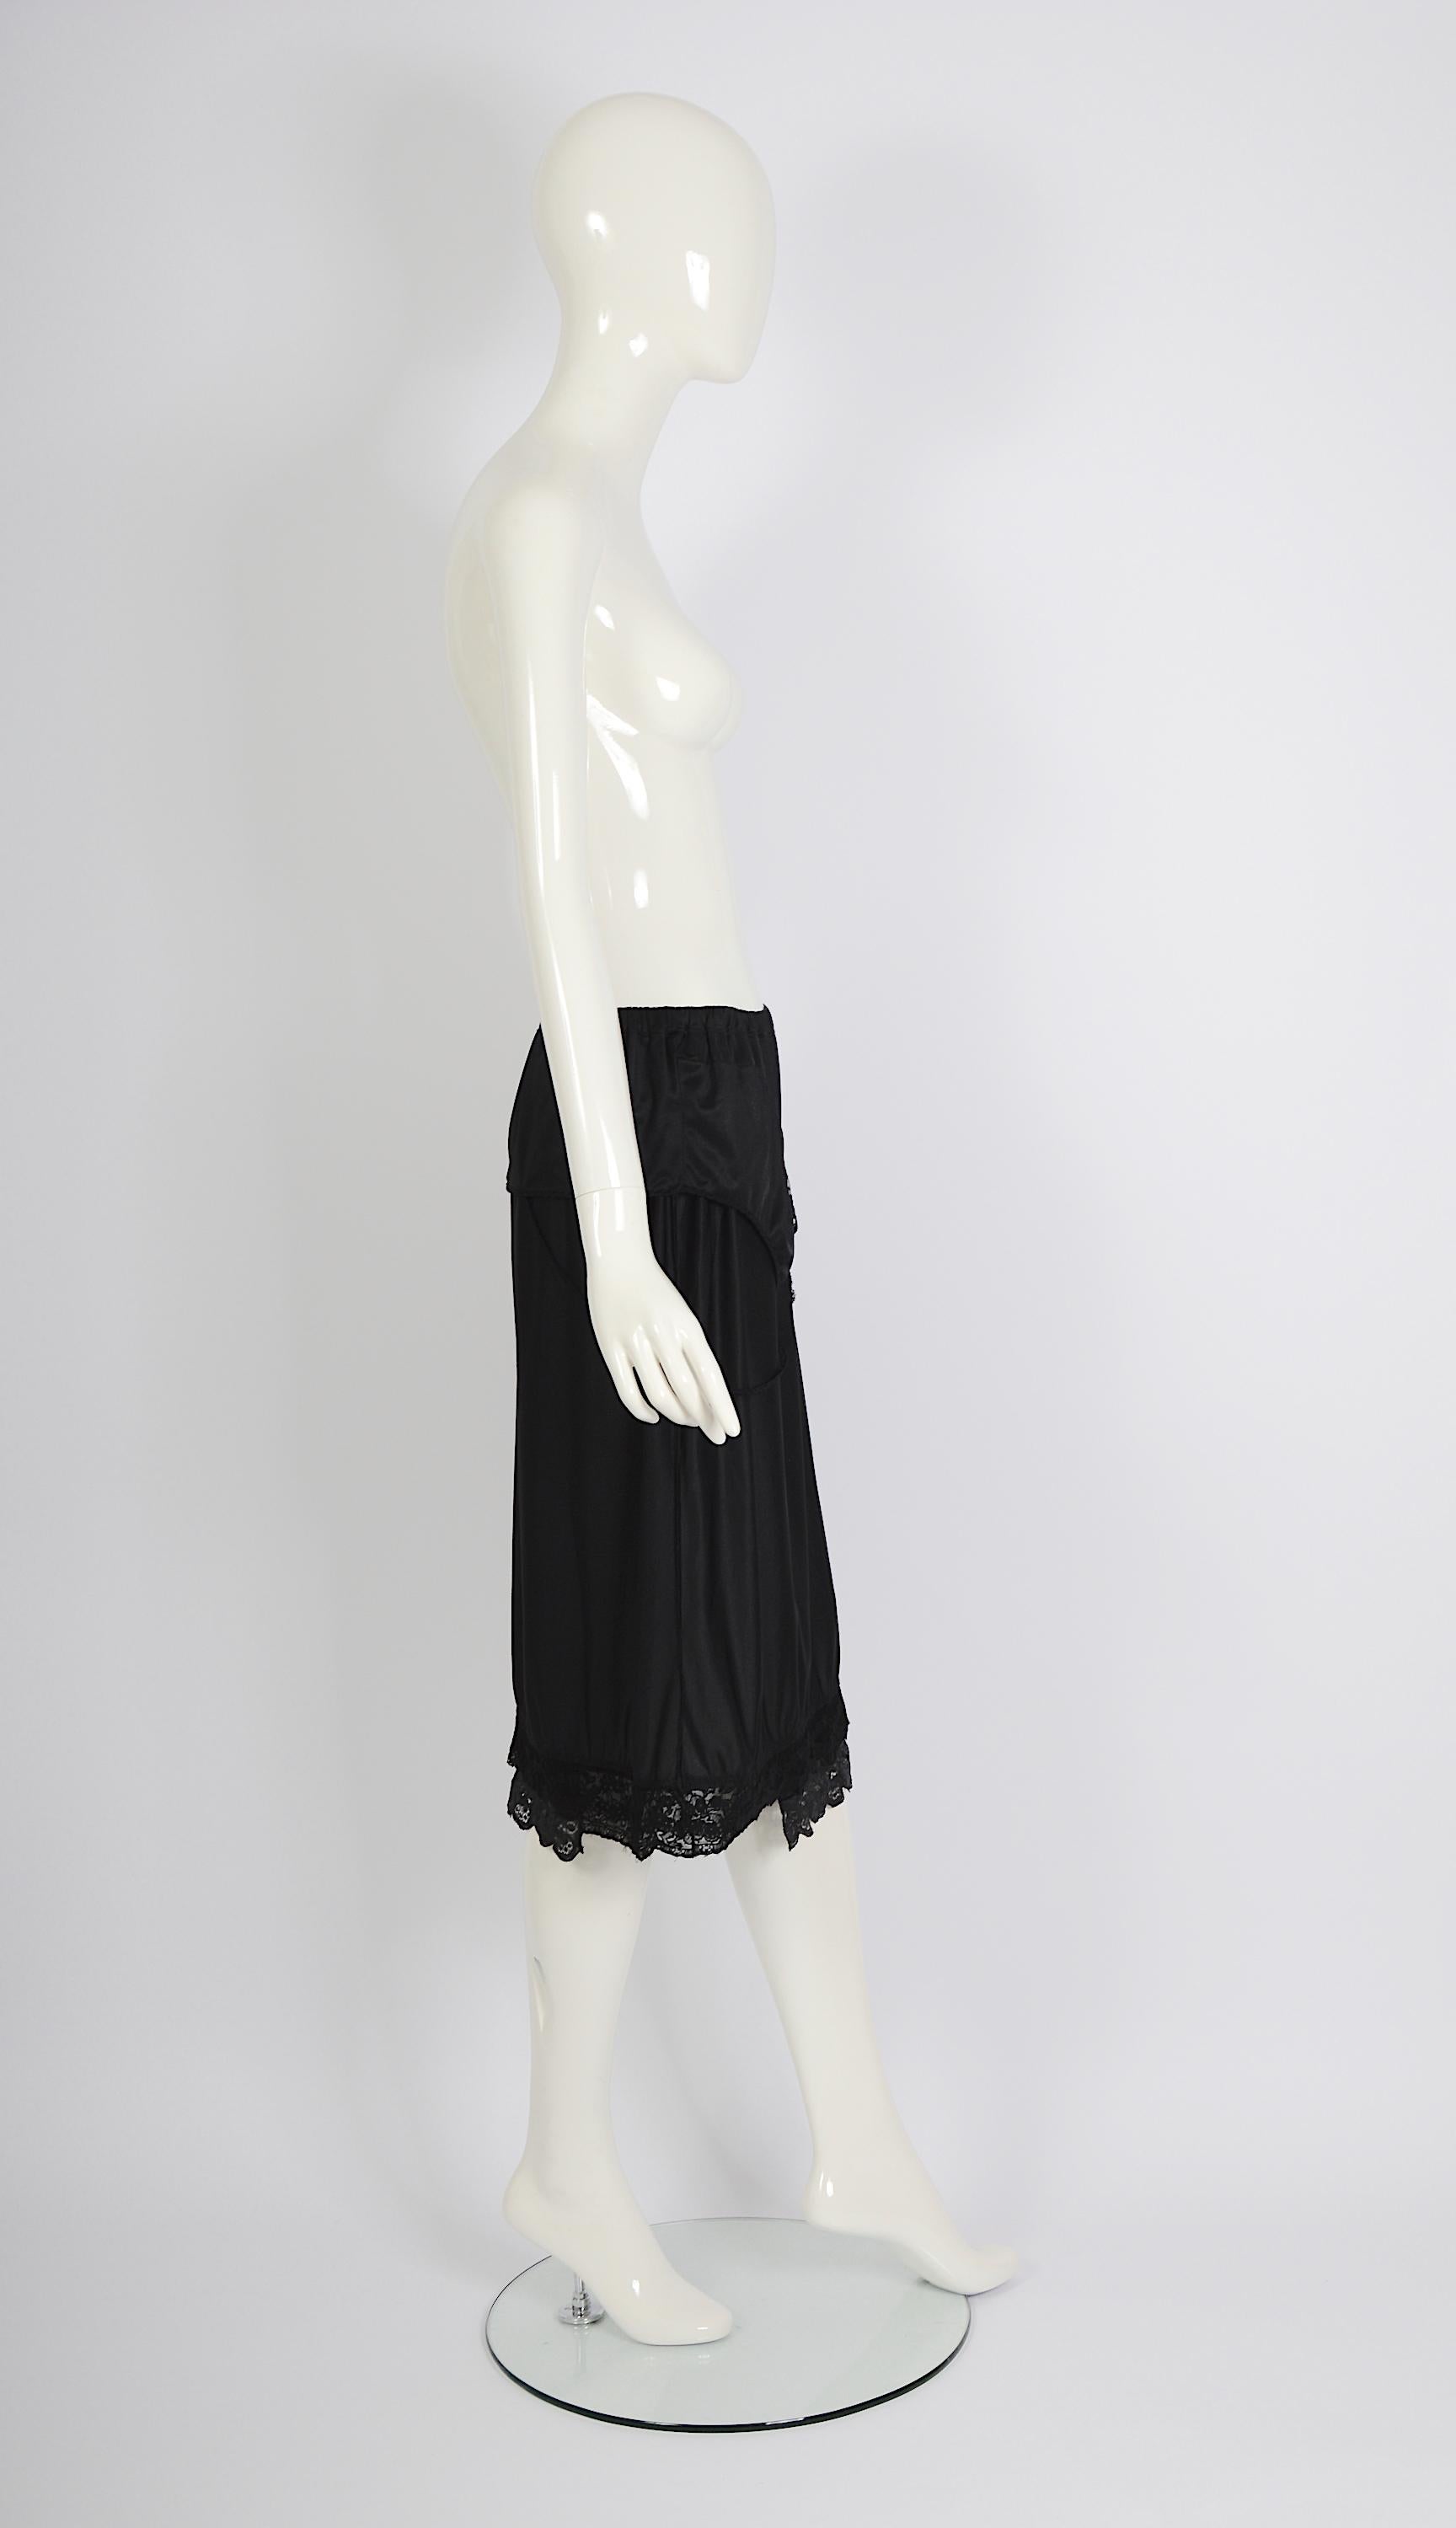 Vintage Martin Margiela artisanal ss 2003 runway black folded dress skirt For Sale 1